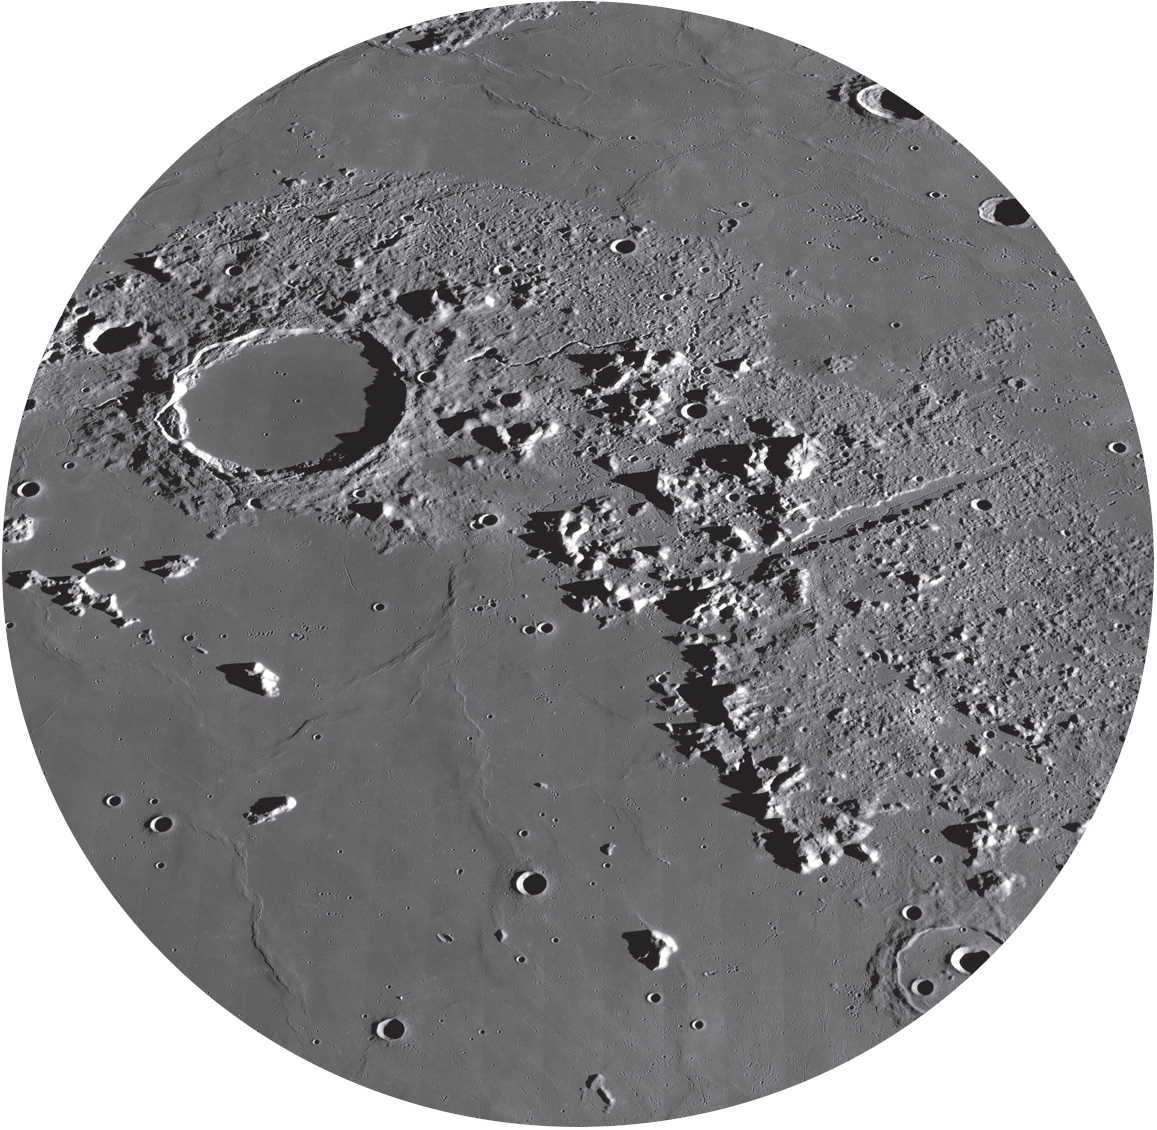 Höga bergstoppar och kuperade områden karaktäriserar bilden av Montes Alpes. NASA/GSFC/Arizona State University